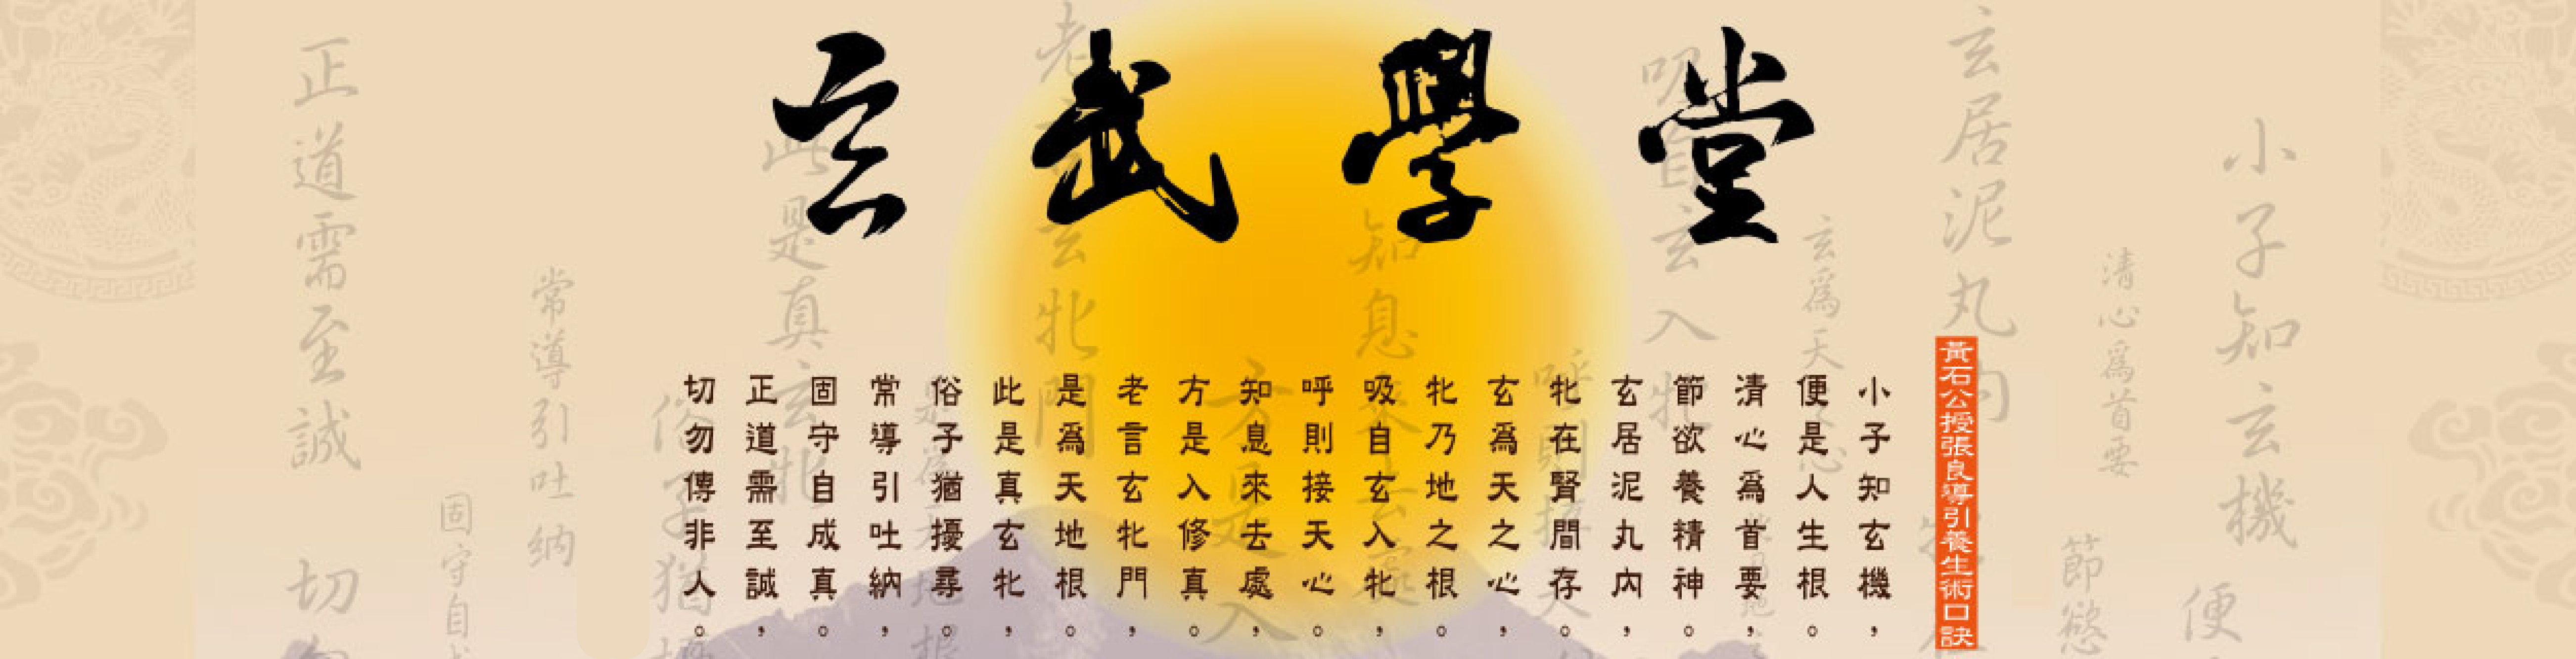 玄武學堂「澤修玄武心聆心靈」的課程資訊 Banner圖片